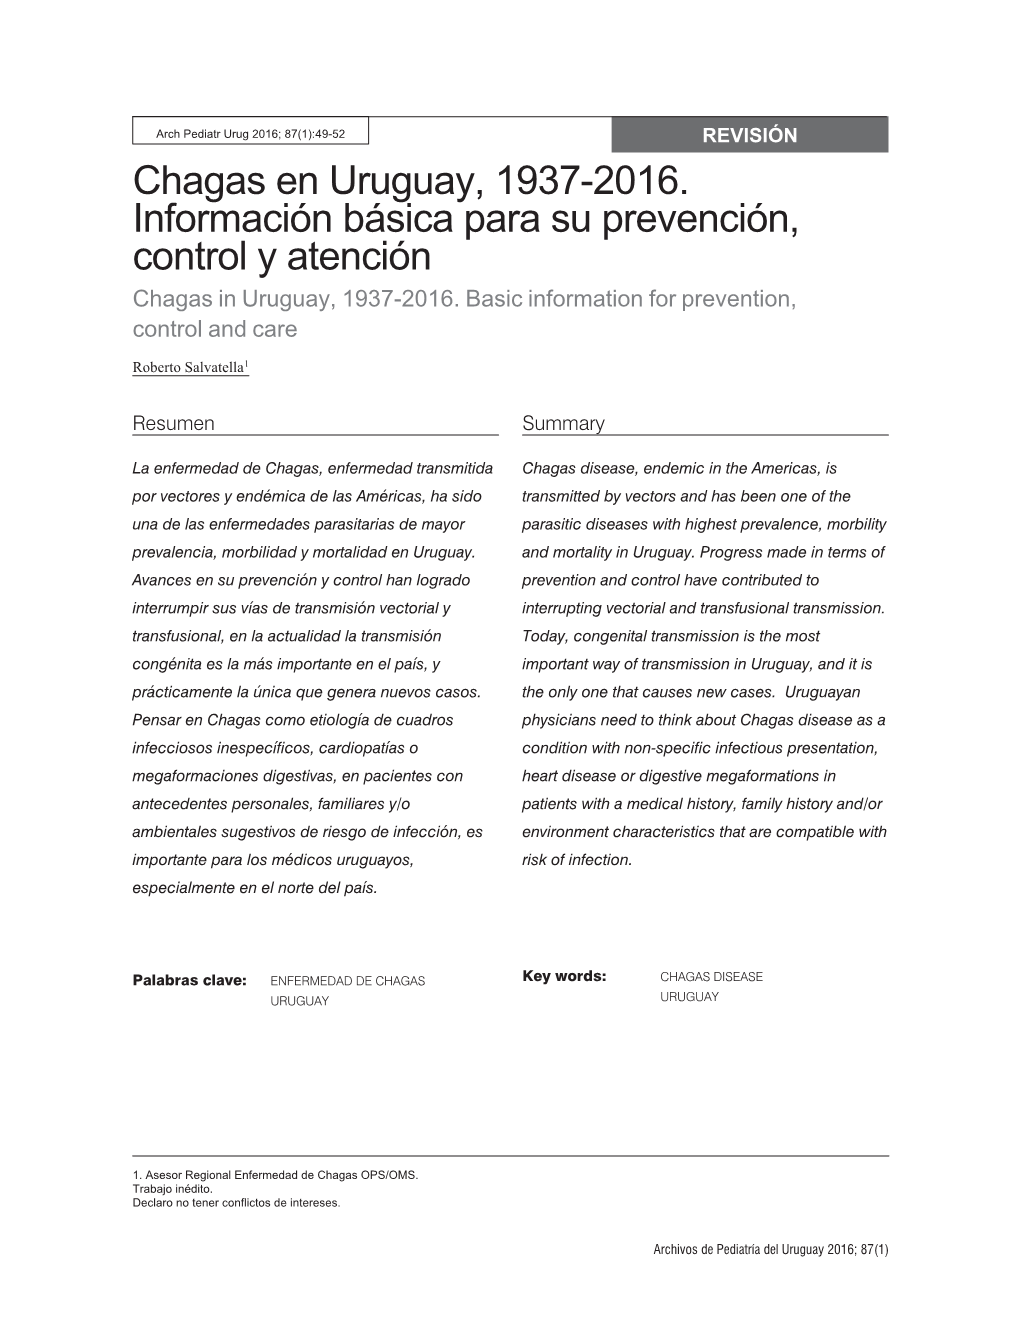 Chagas En Uruguay, 1937-2016. Información Básica Para Su Prevención, Control Y Atención Chagas in Uruguay, 1937-2016